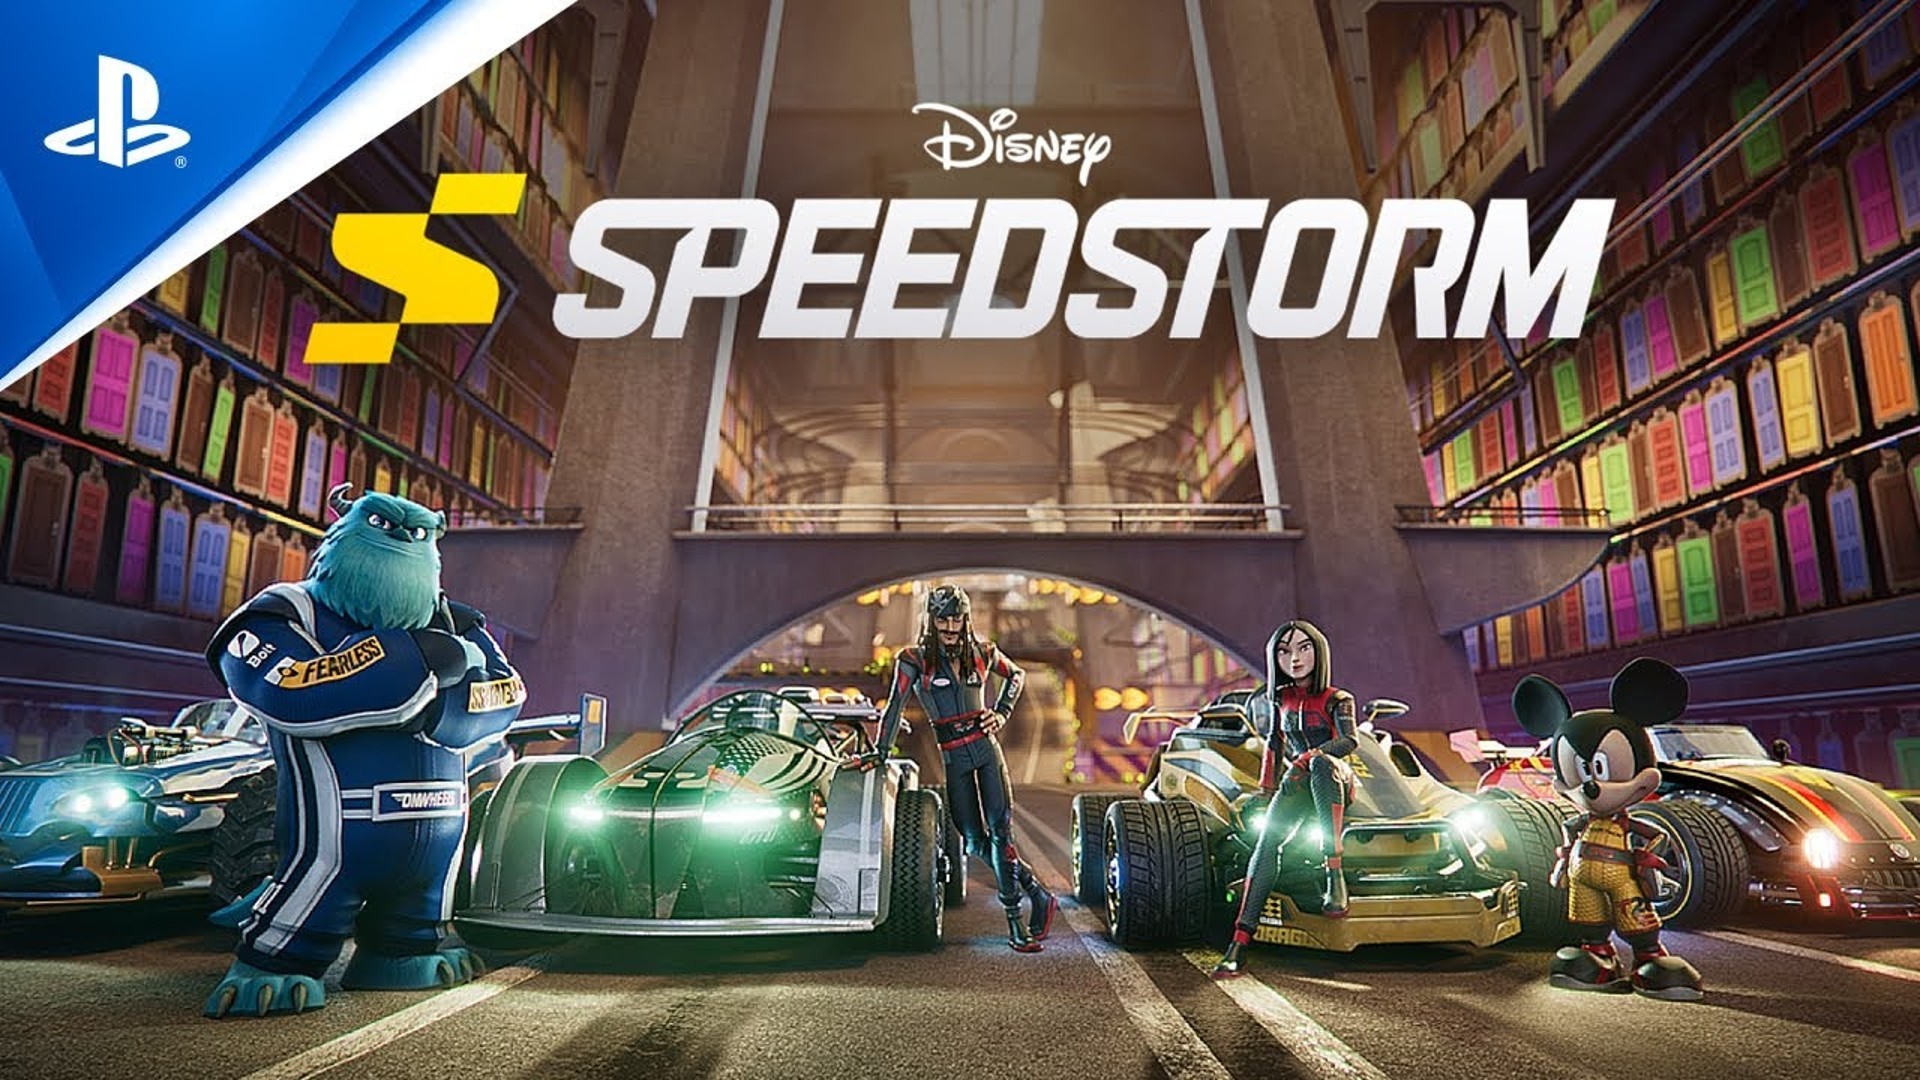 Disney Speedstorm se burla de habilidades, pistas y cosméticos en un tráiler cinemático